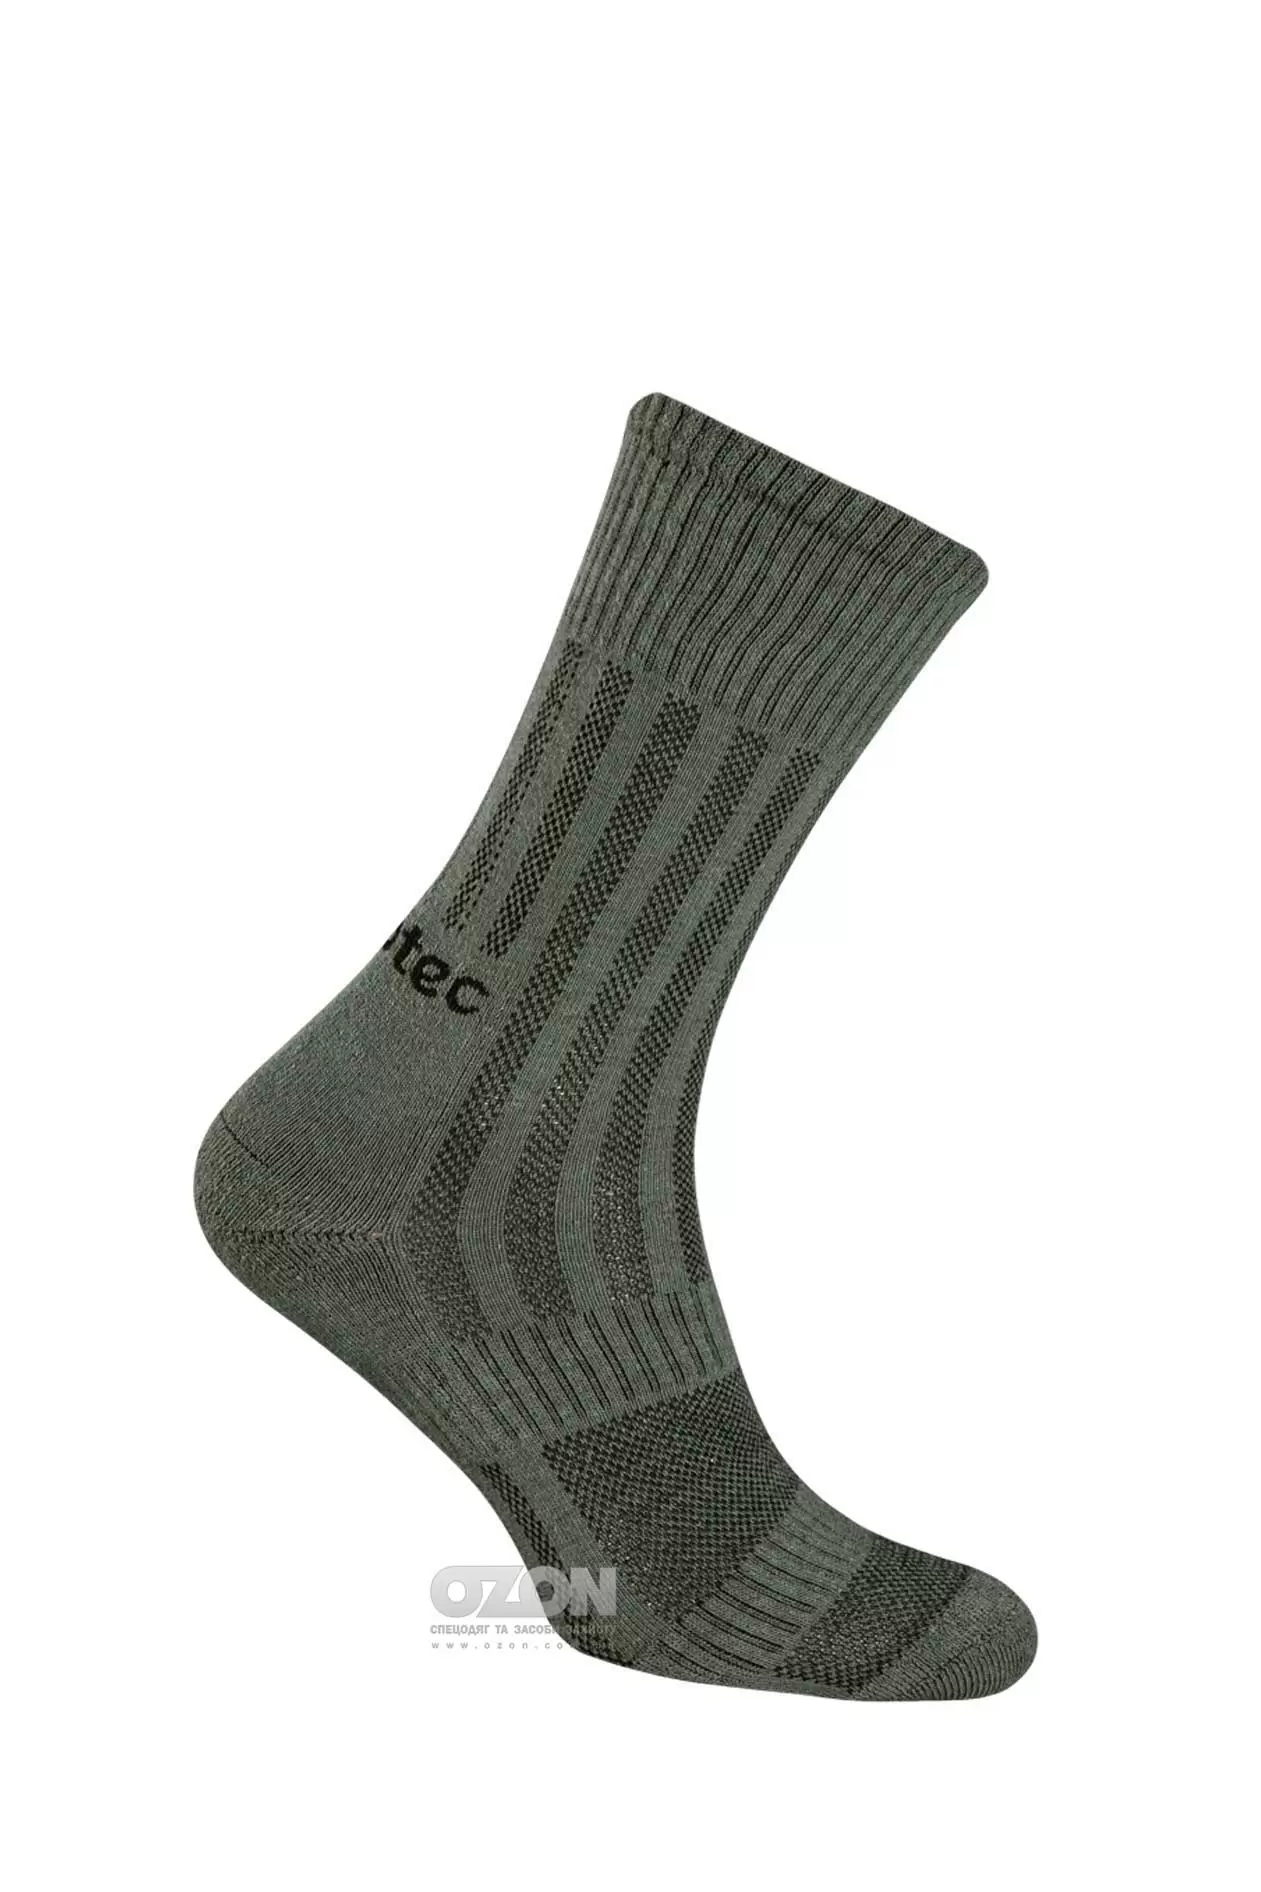 Шкарпетки трекінгові TRK 2.0 Middle Khaki, Camo-Tec - Фото 1